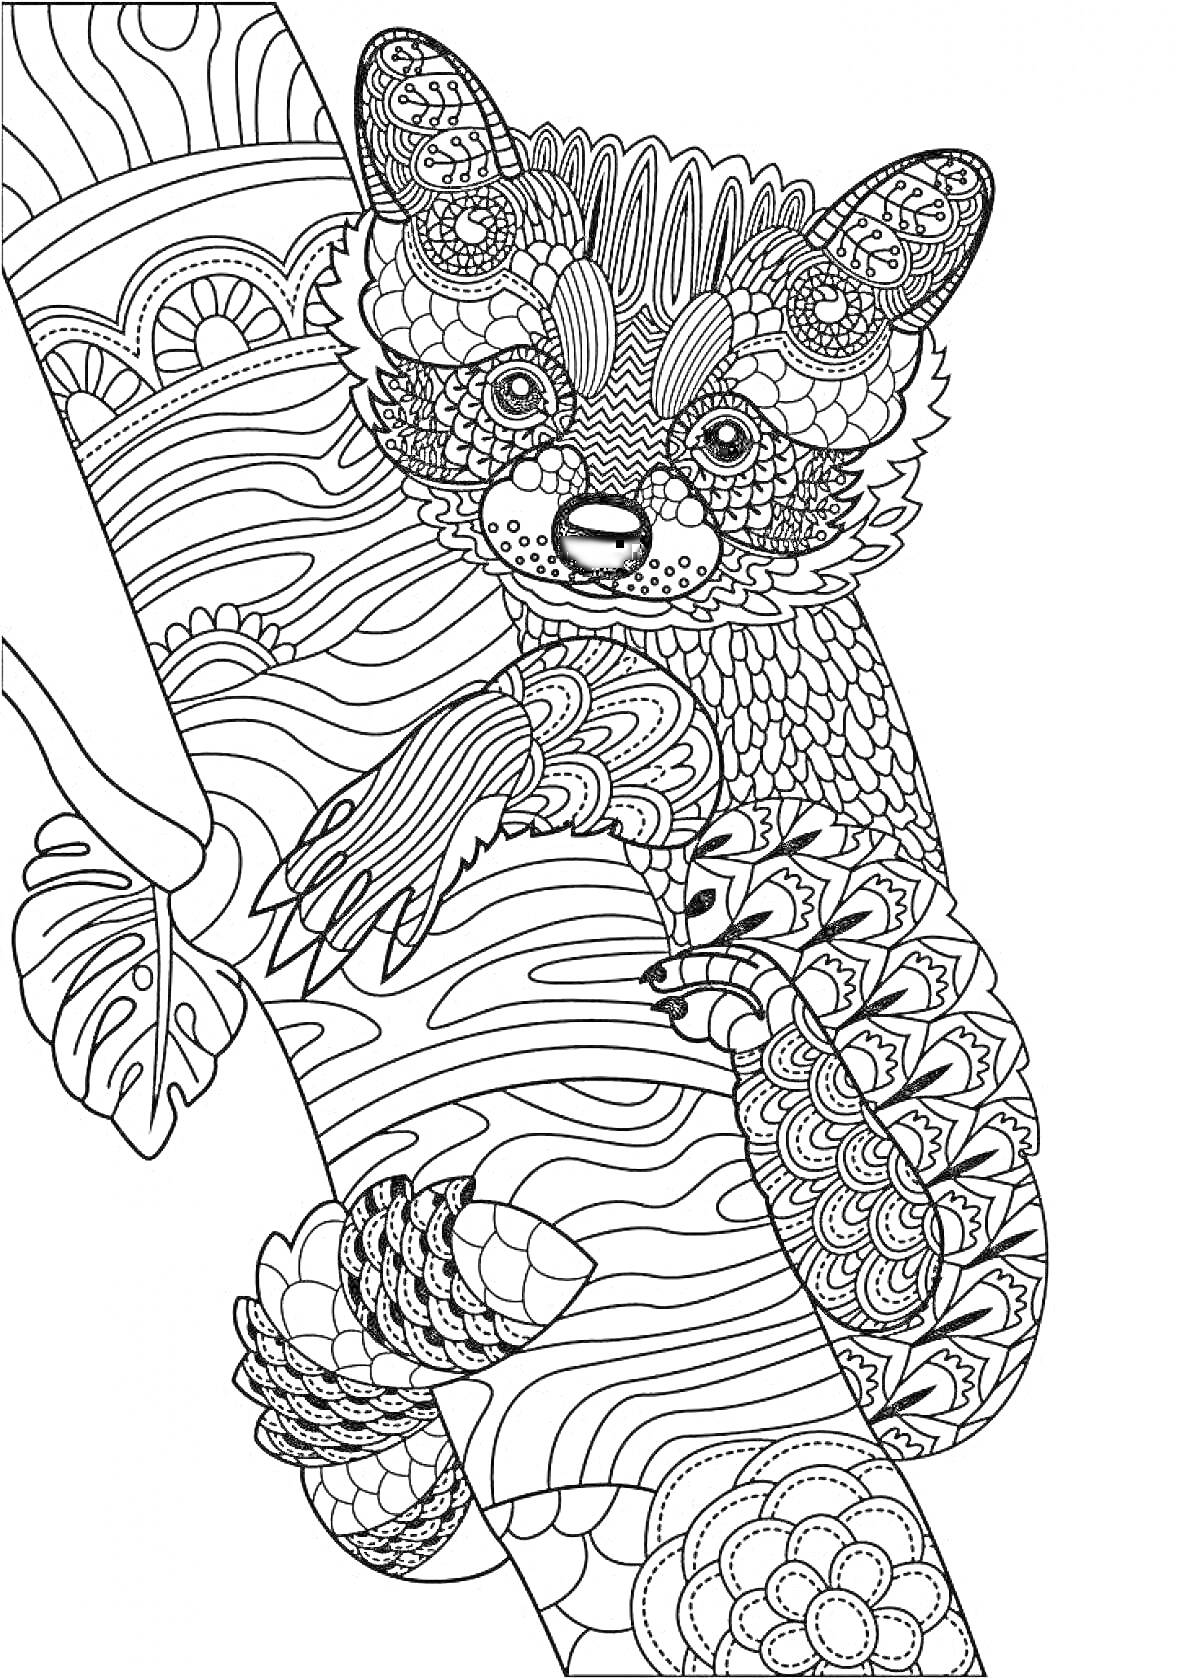 Раскраска Детализированное изображение лемура на дереве